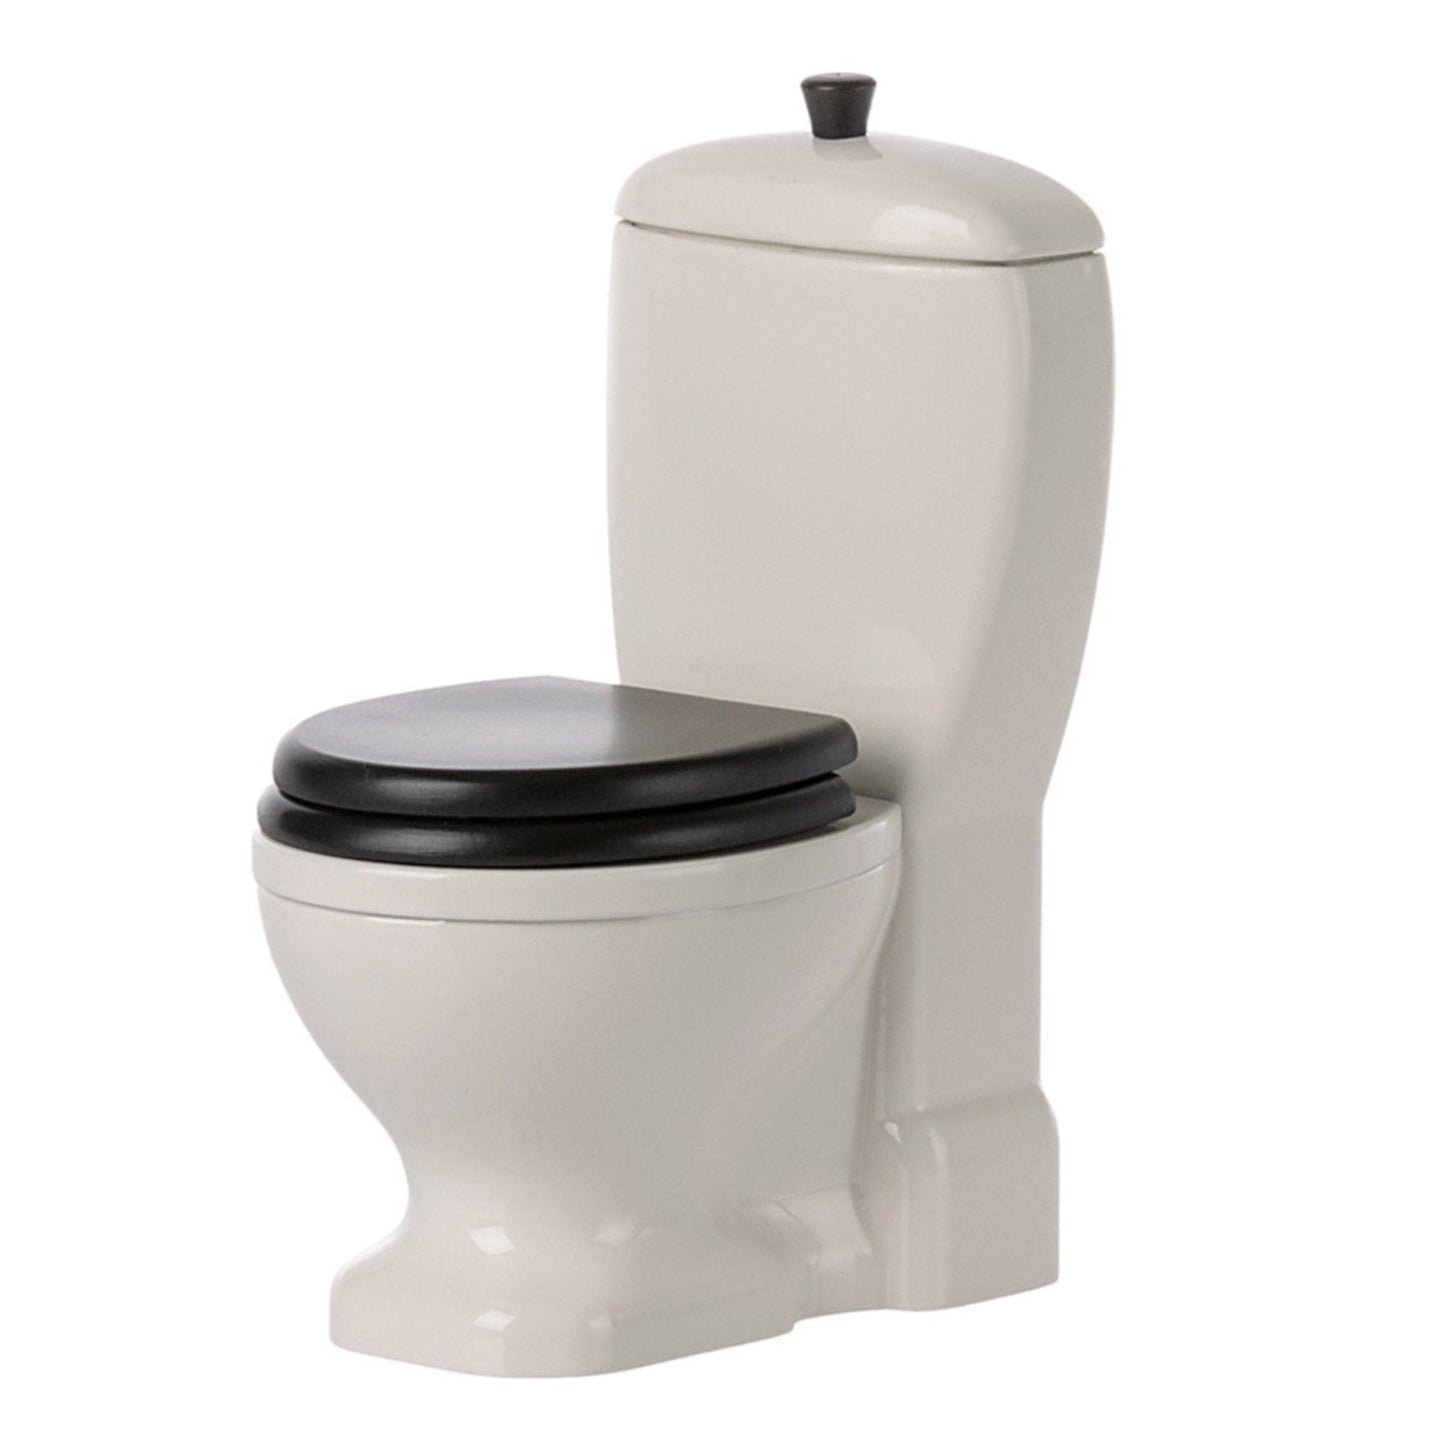 Maileg Miniature Toilet PRE-ORDER eta Dec 23 (8534951657759)